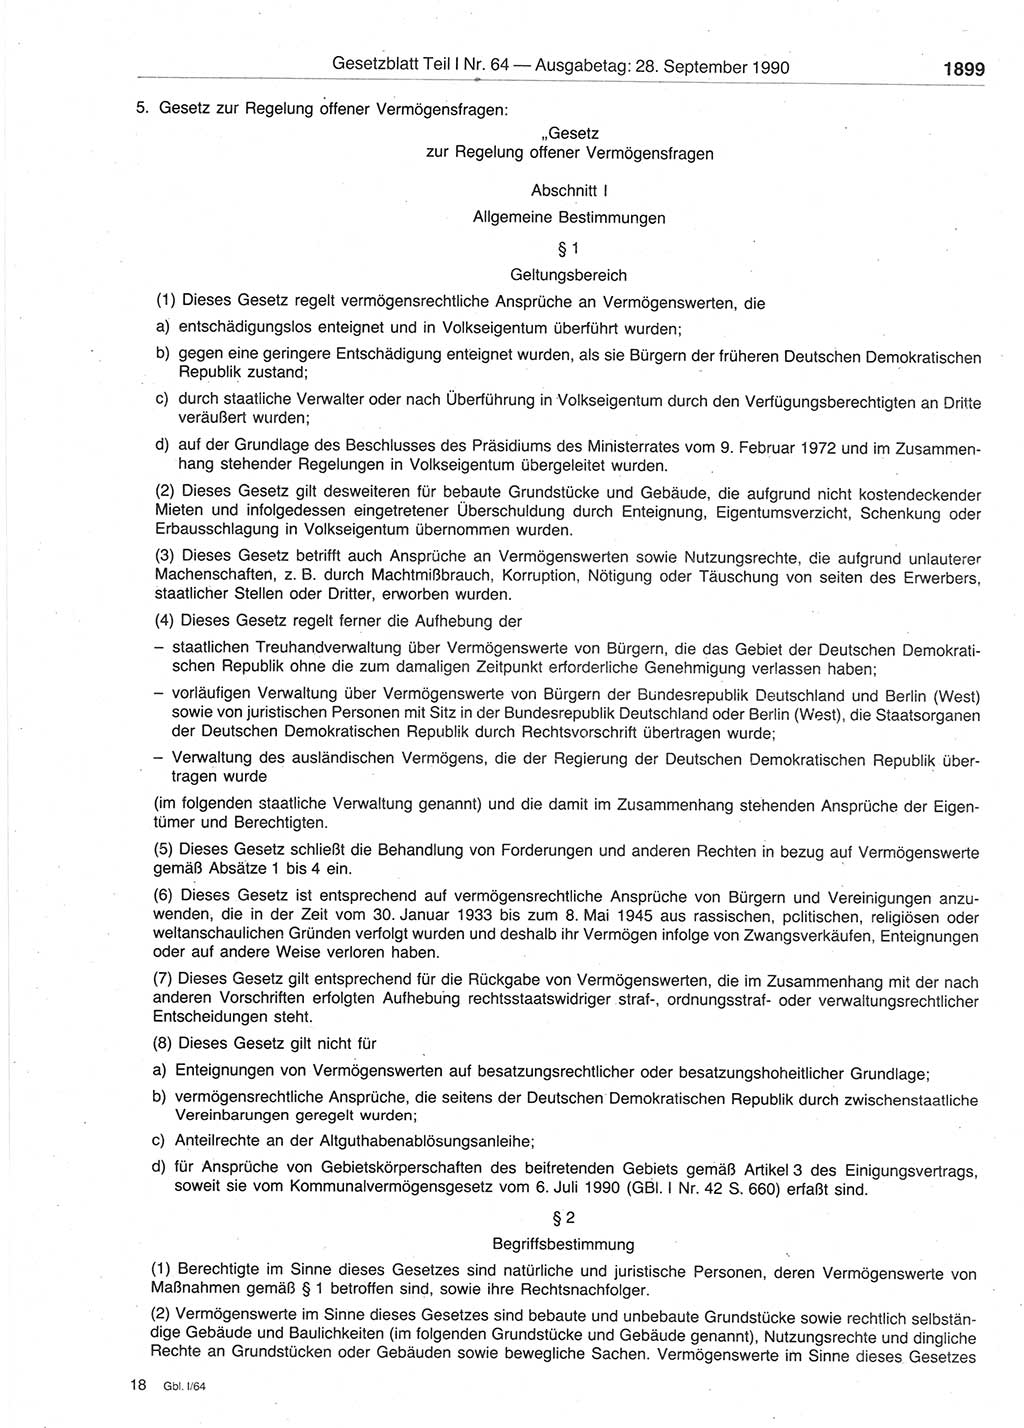 Gesetzblatt (GBl.) der Deutschen Demokratischen Republik (DDR) Teil Ⅰ 1990, Seite 1899 (GBl. DDR Ⅰ 1990, S. 1899)